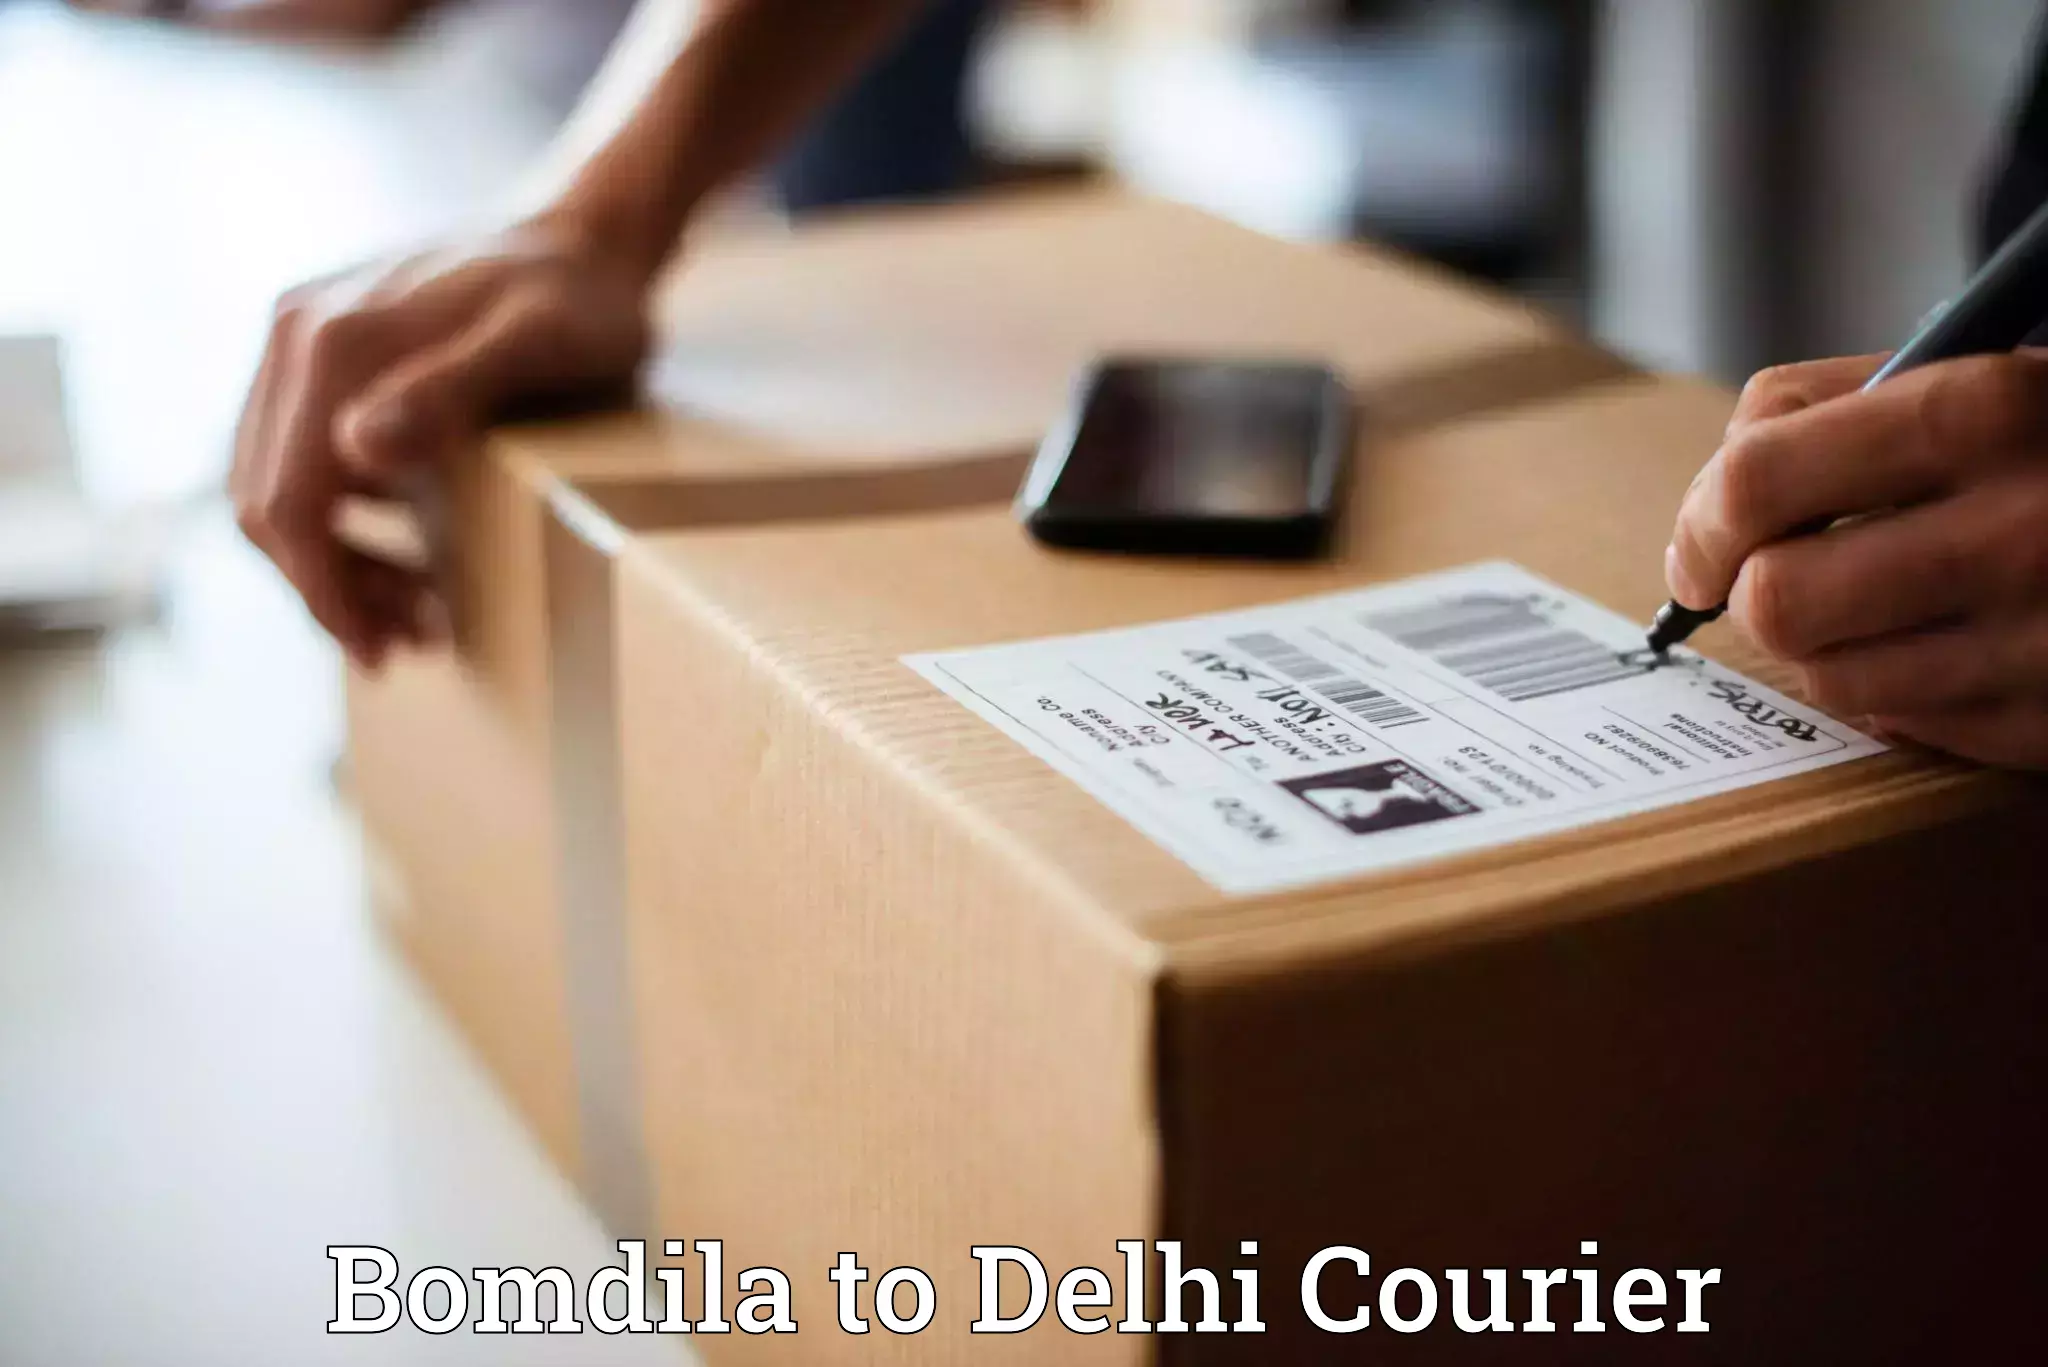 Lightweight parcel options Bomdila to IIT Delhi